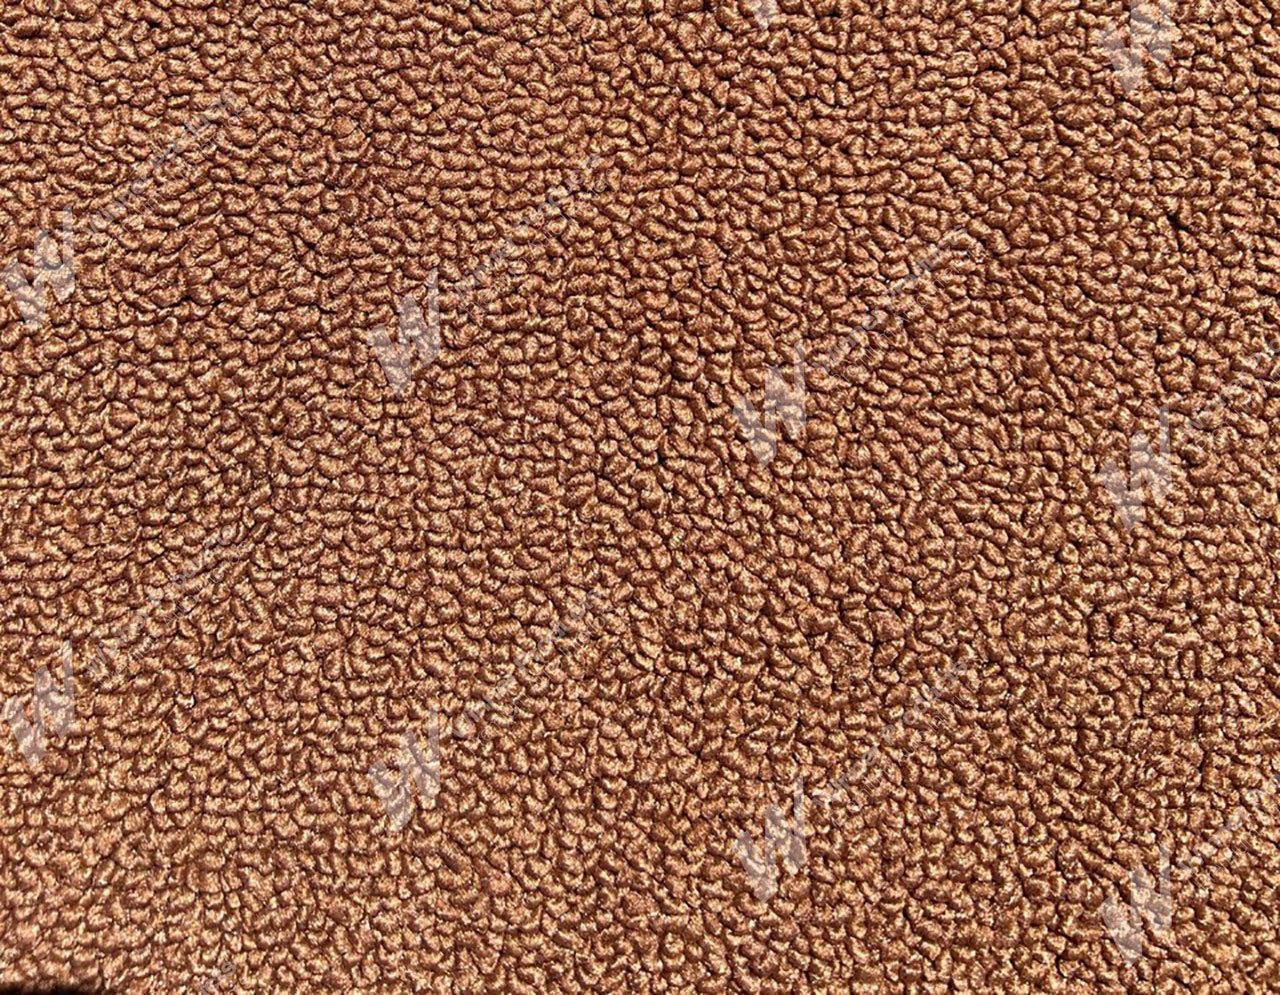 Holden Kingswood HX Kingswood Ute 67V Tan Carpet (Image 1 of 1)